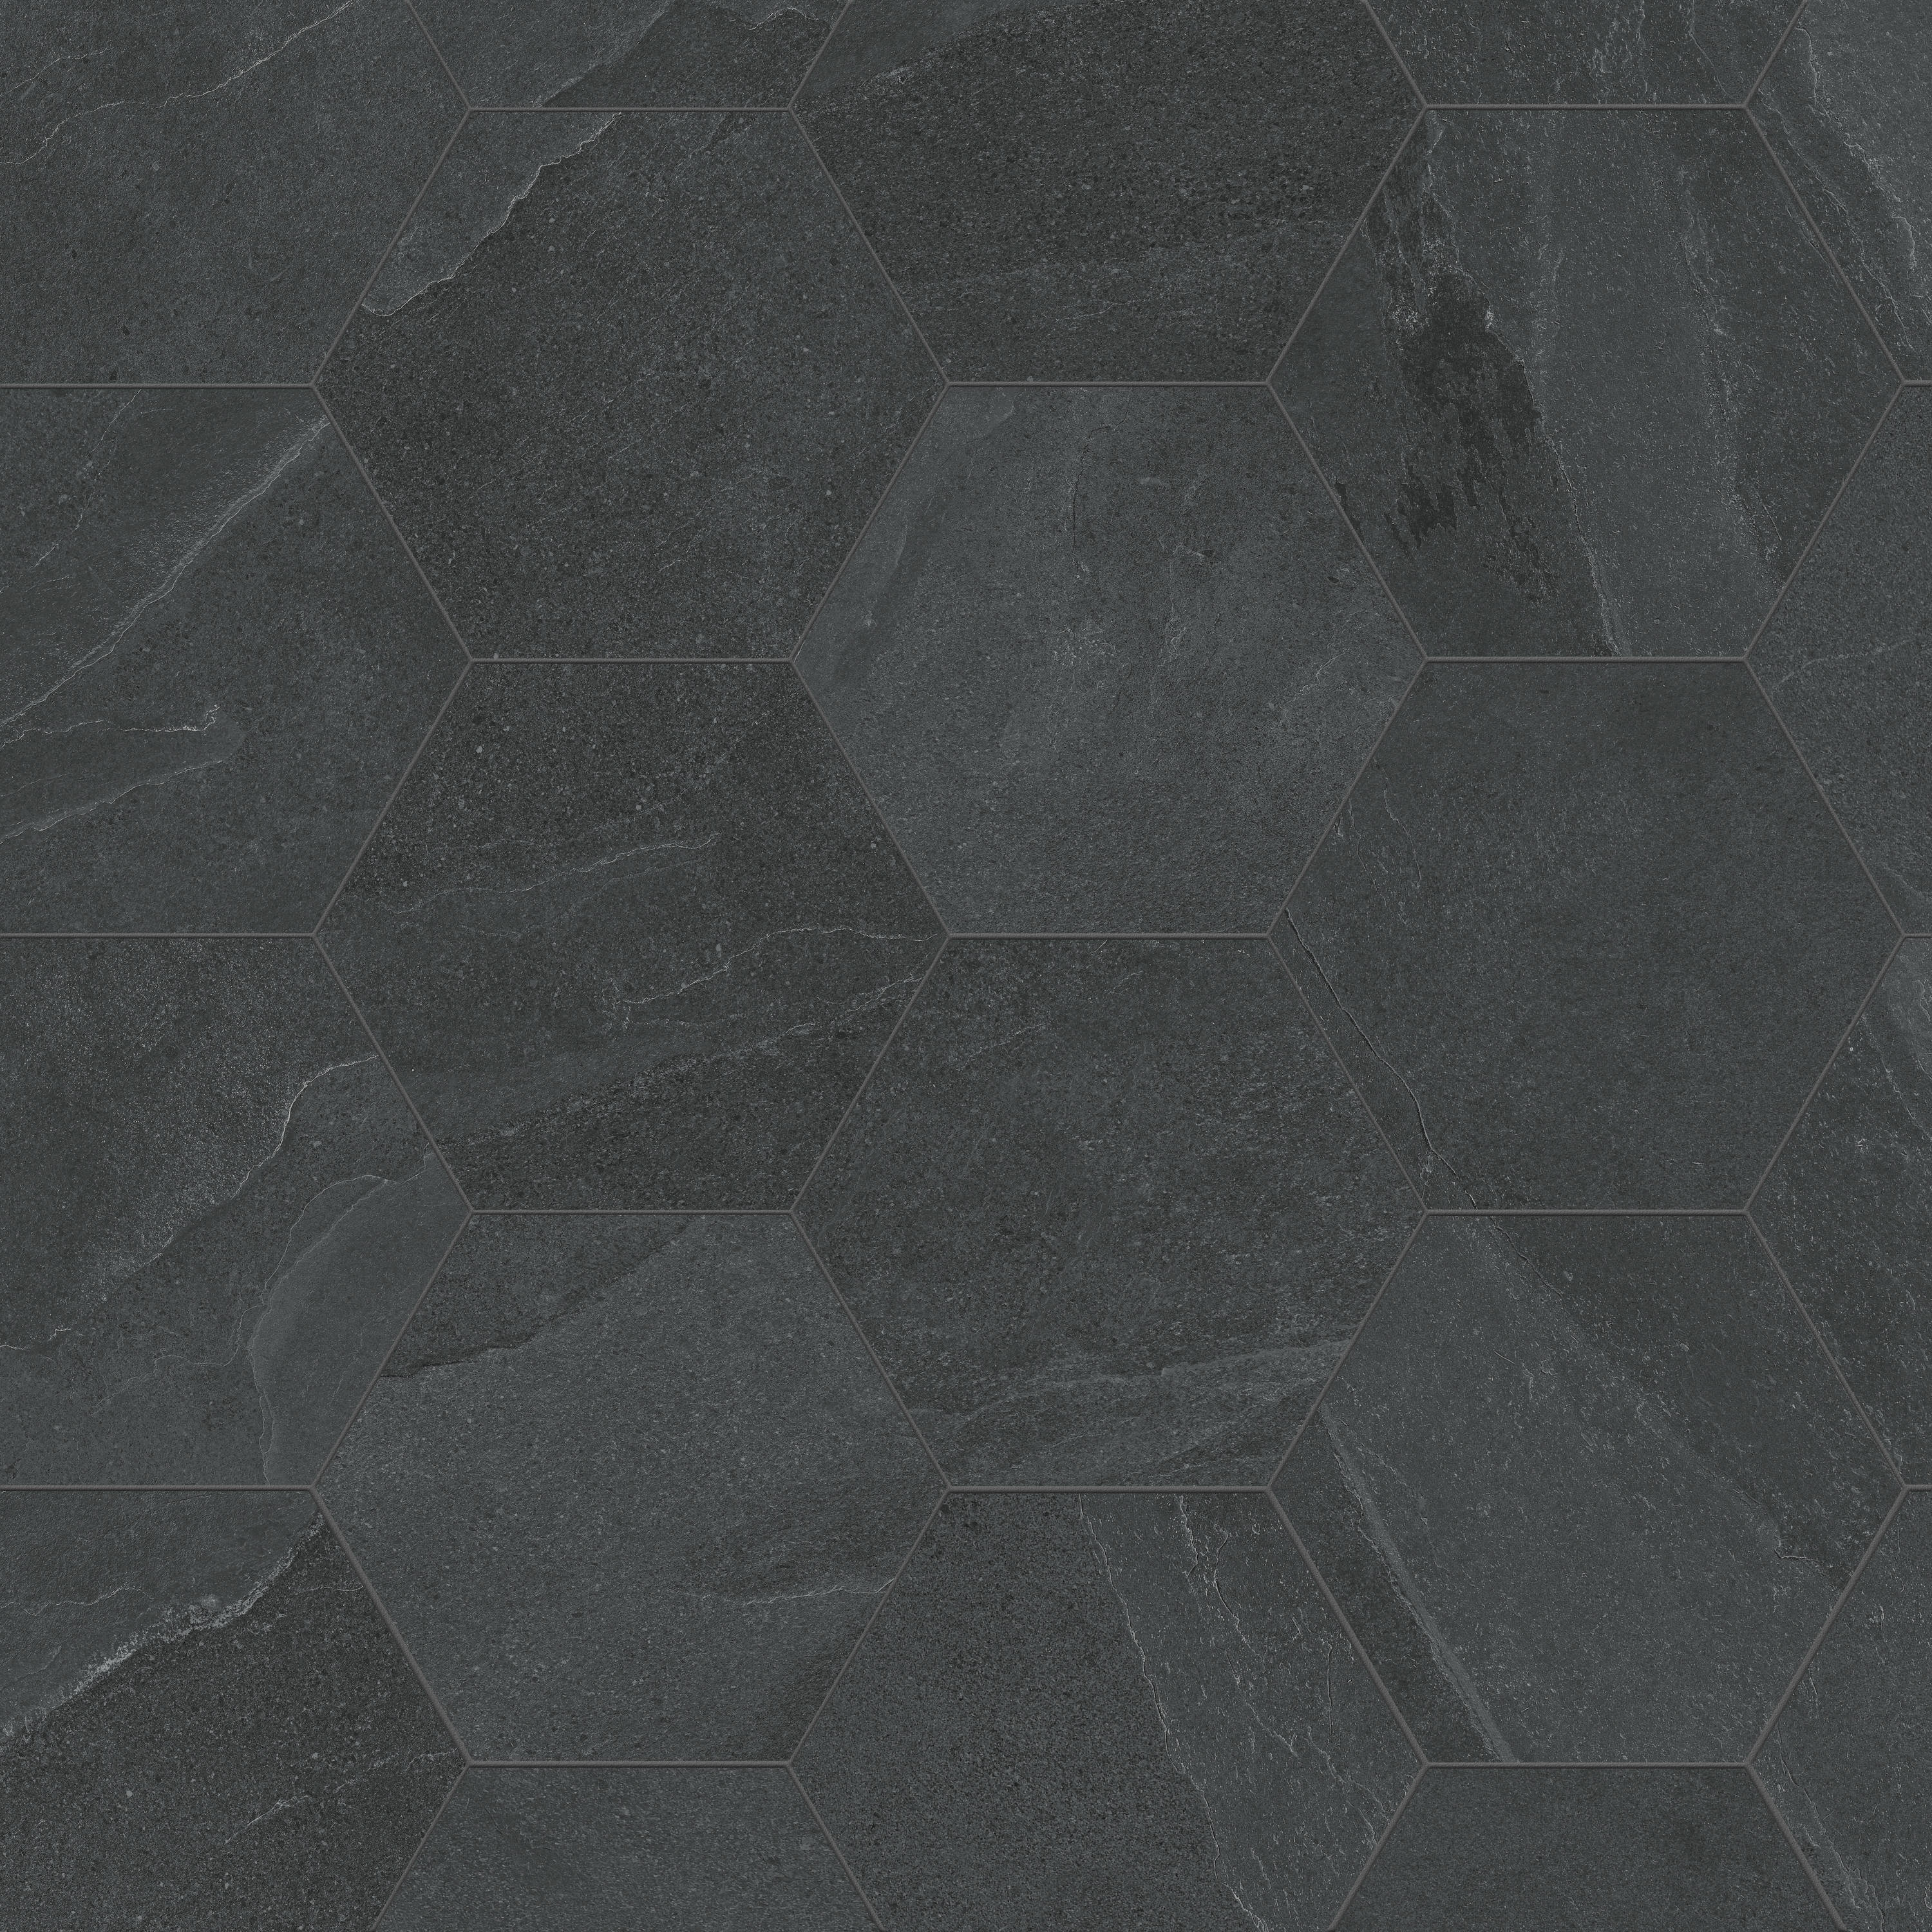 Seamless Modern Glossy Black Ceramic Tile Stock Illustration